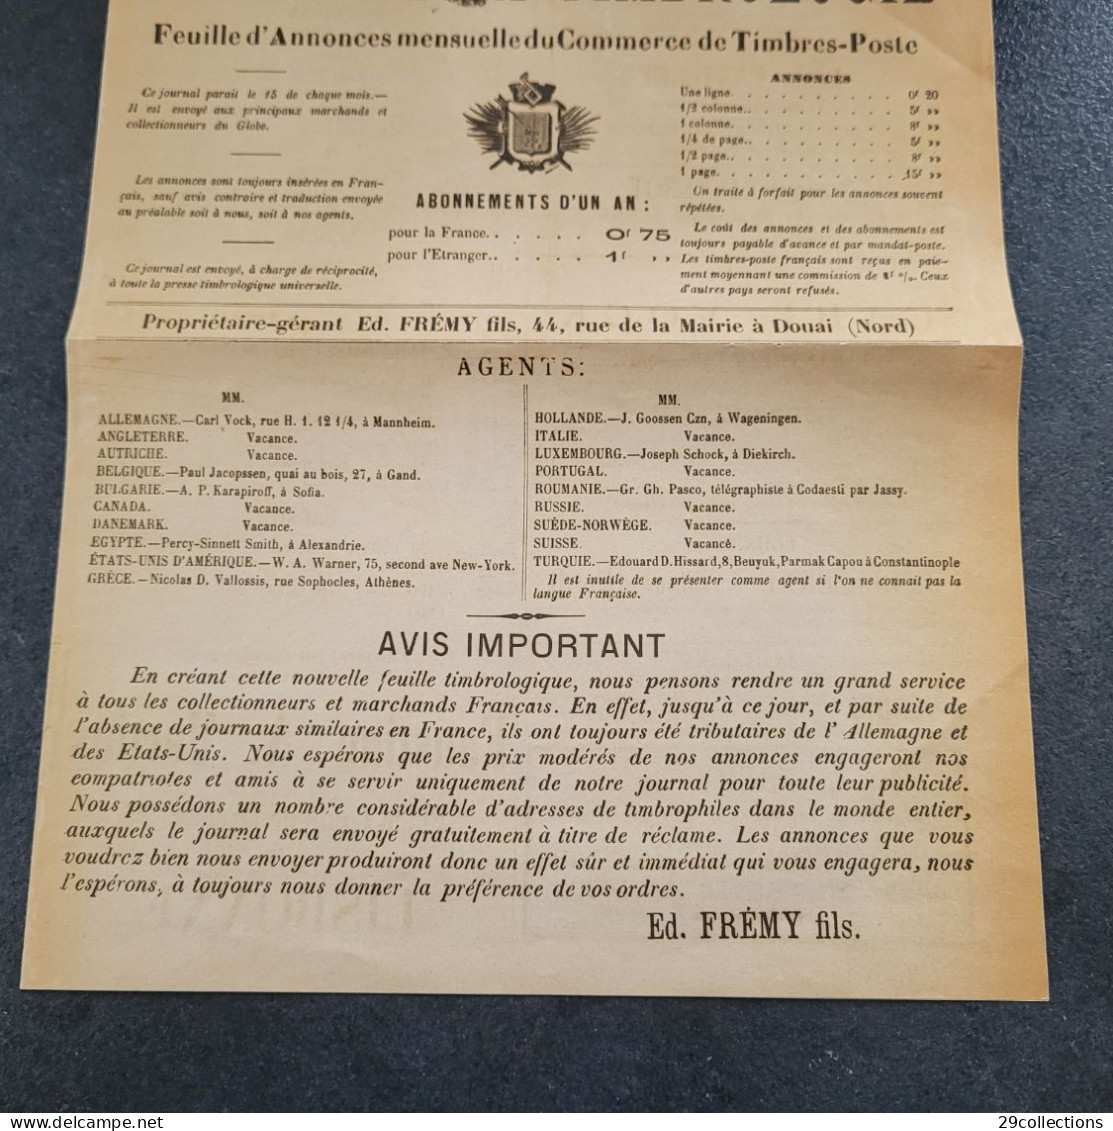 L'ECHO DE LA TIMBROLOGIE N°1 - 15/11/1887 - 1° Mensuel Français Philatélique - French (until 1940)